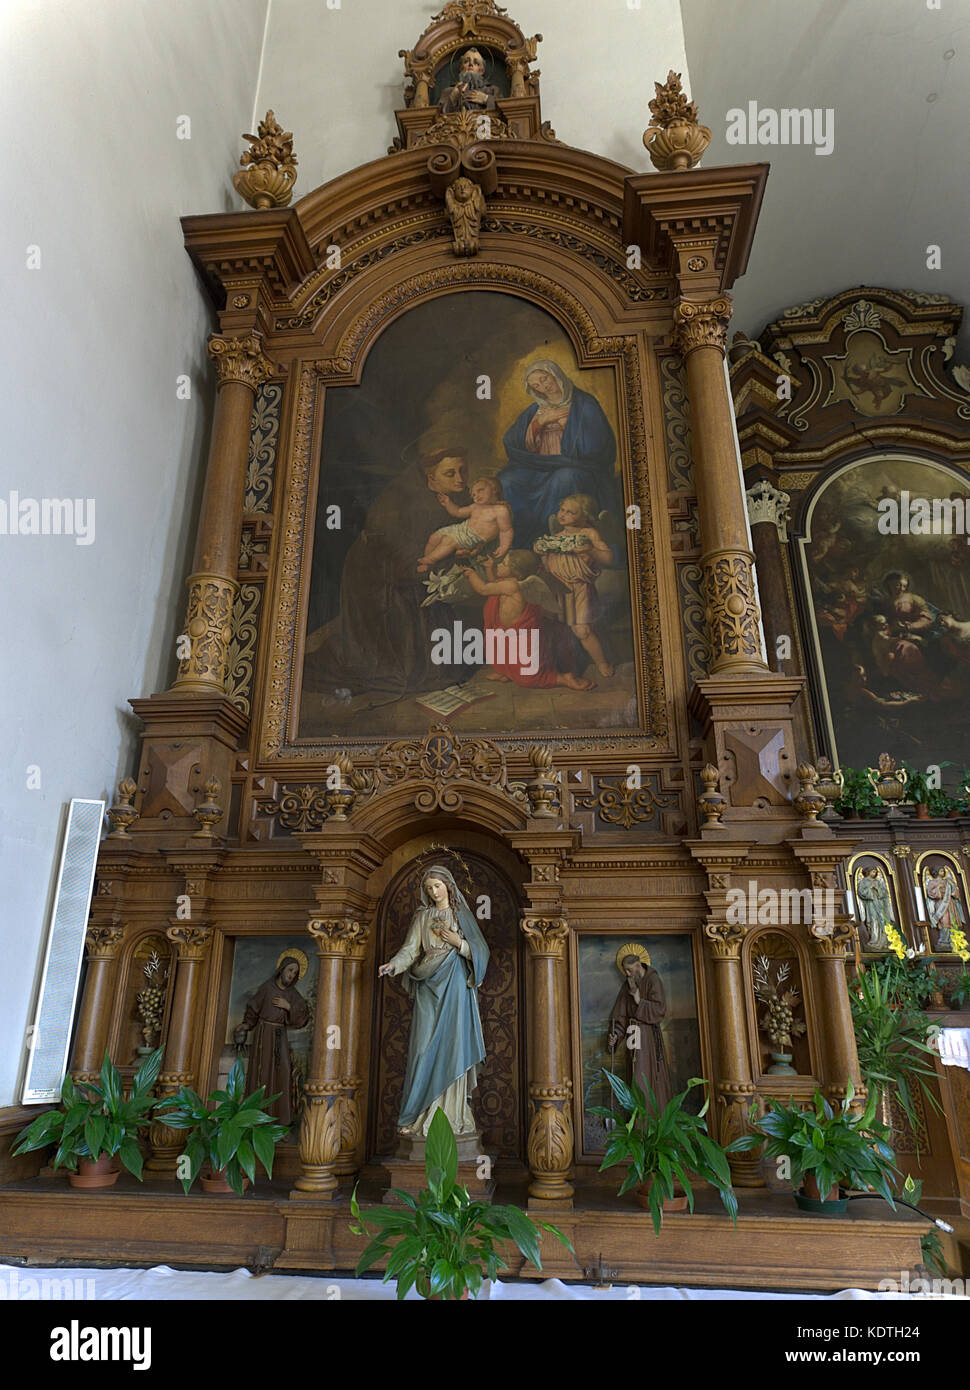 Bressanone Alto Adige Italia. Brixen Südtirol Italien. Innenraum Kapuzinerbruder Kirche, erbaut 1340, aus Holz geschnitzte Altar mit der Malerei. Stockfoto